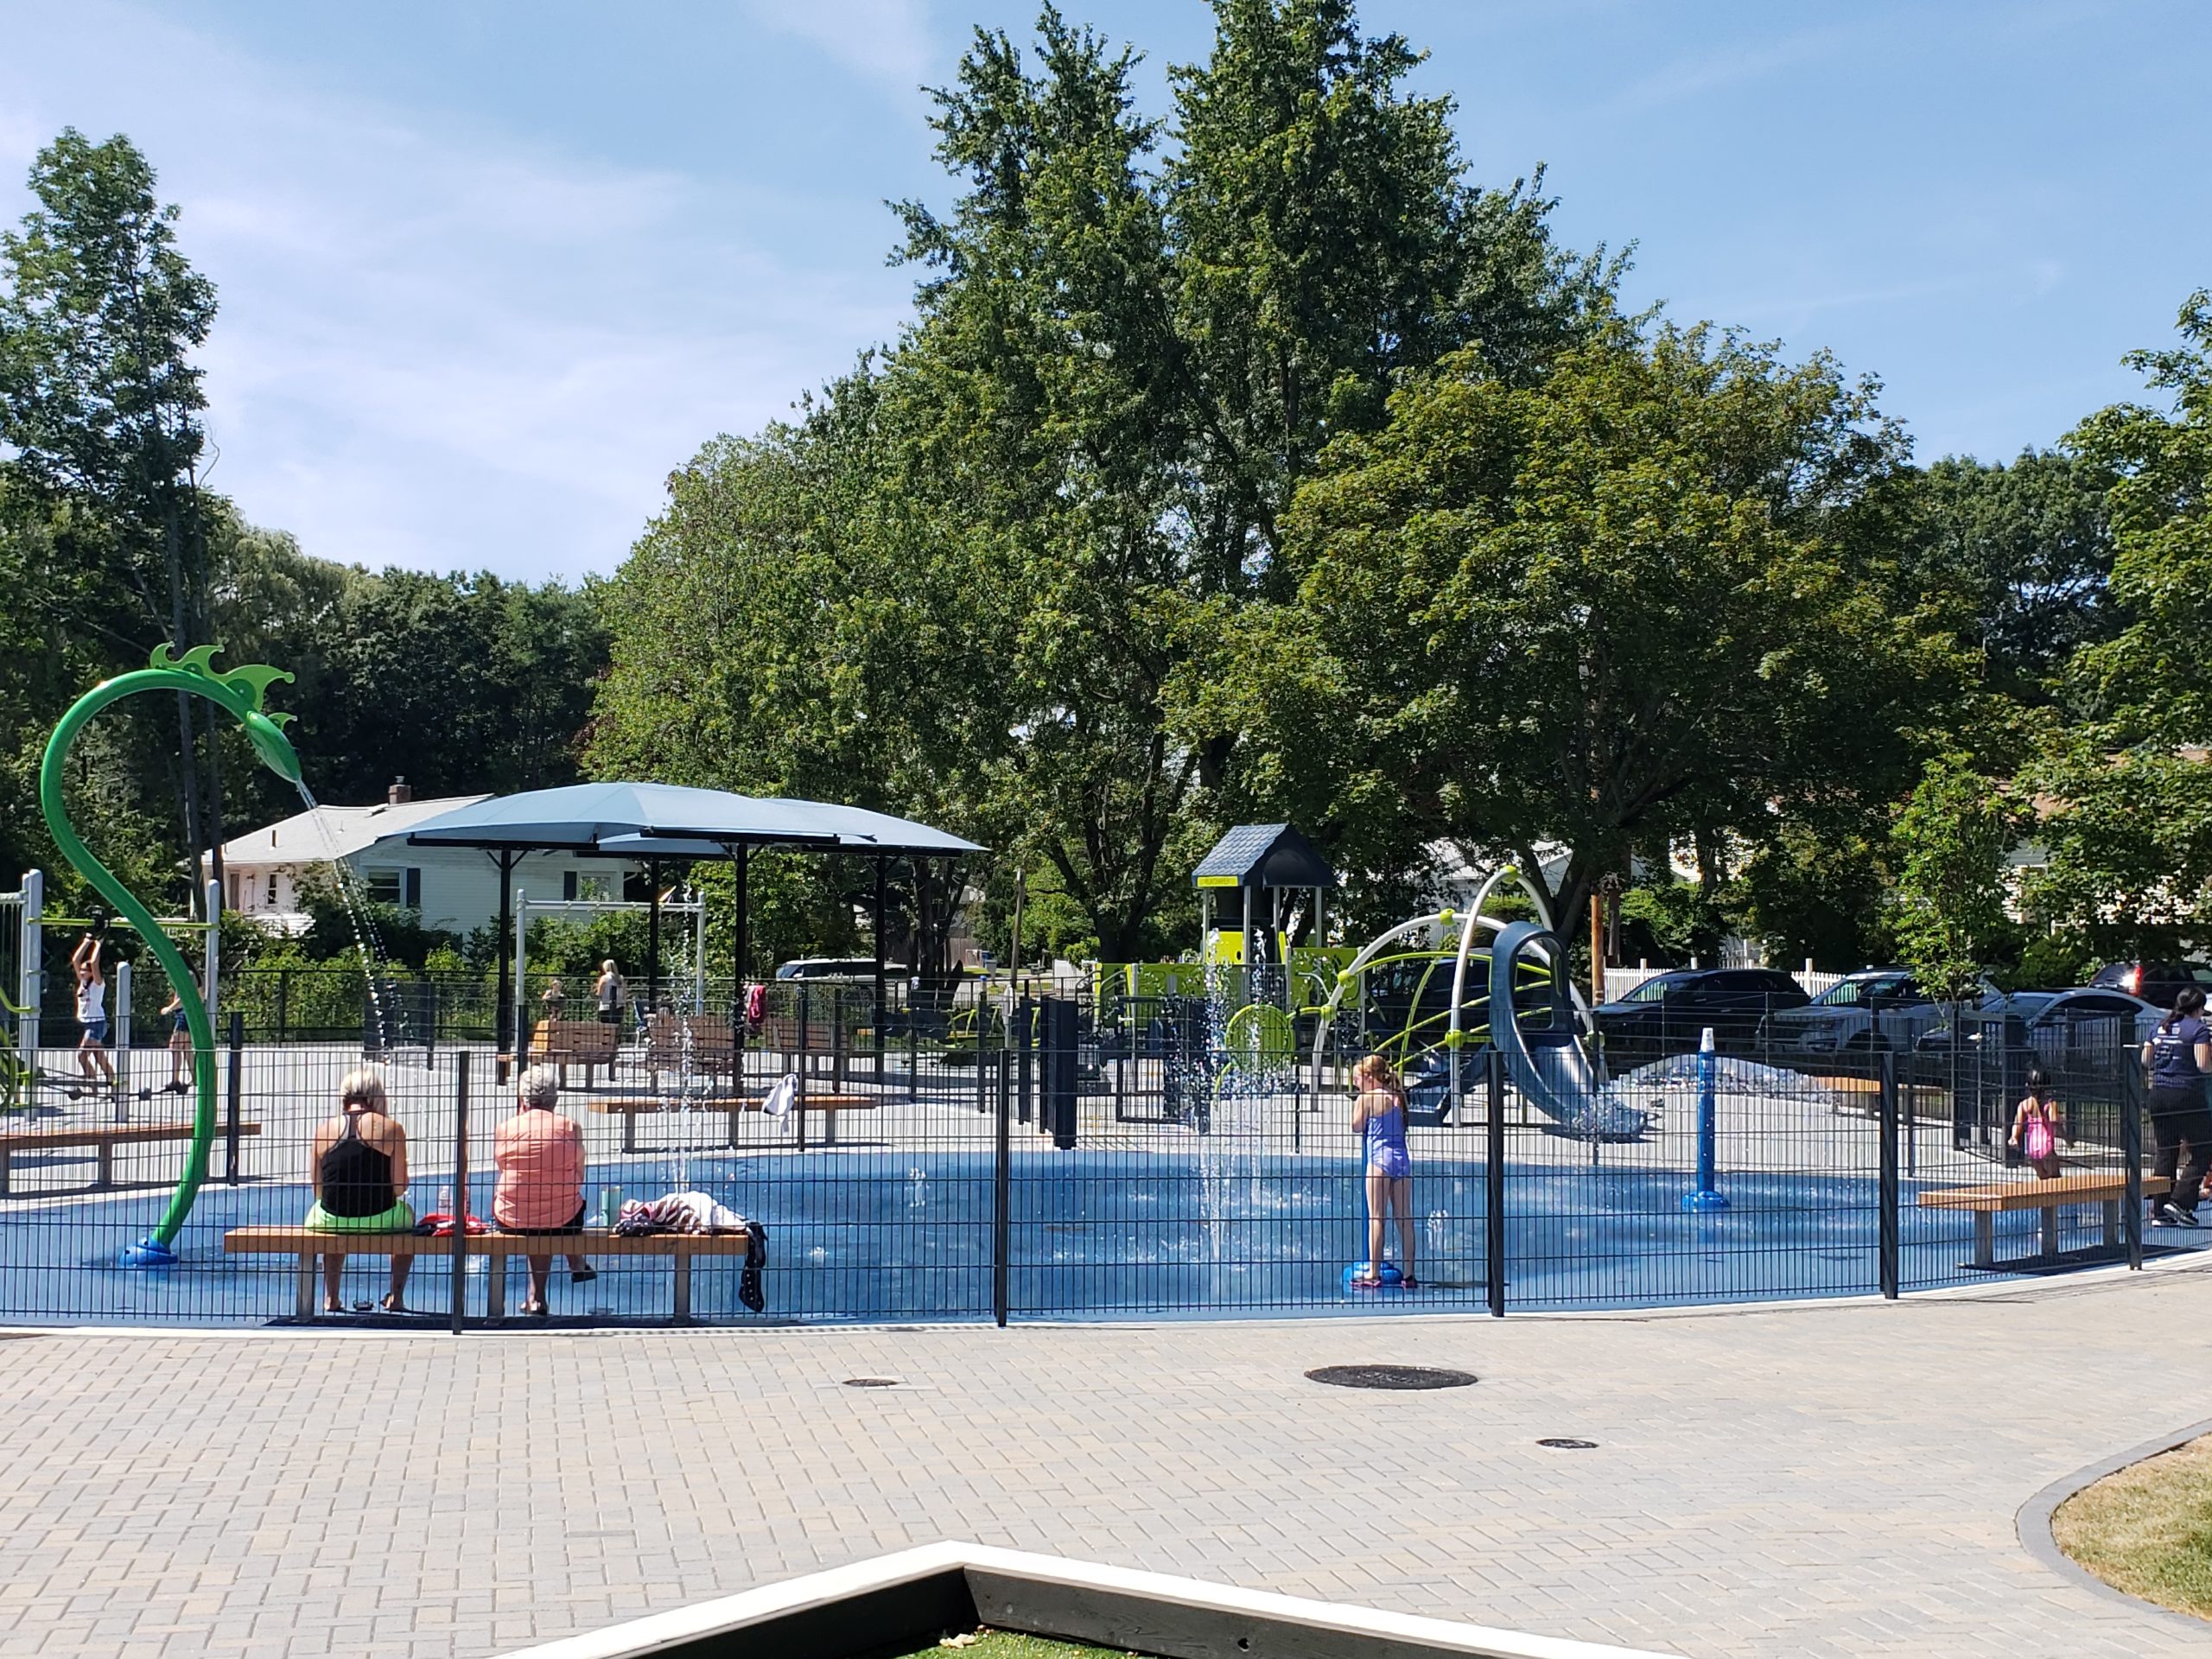 Graverson Park Waltham Massachusetts Landscape Structures playground Vortex Splashpad